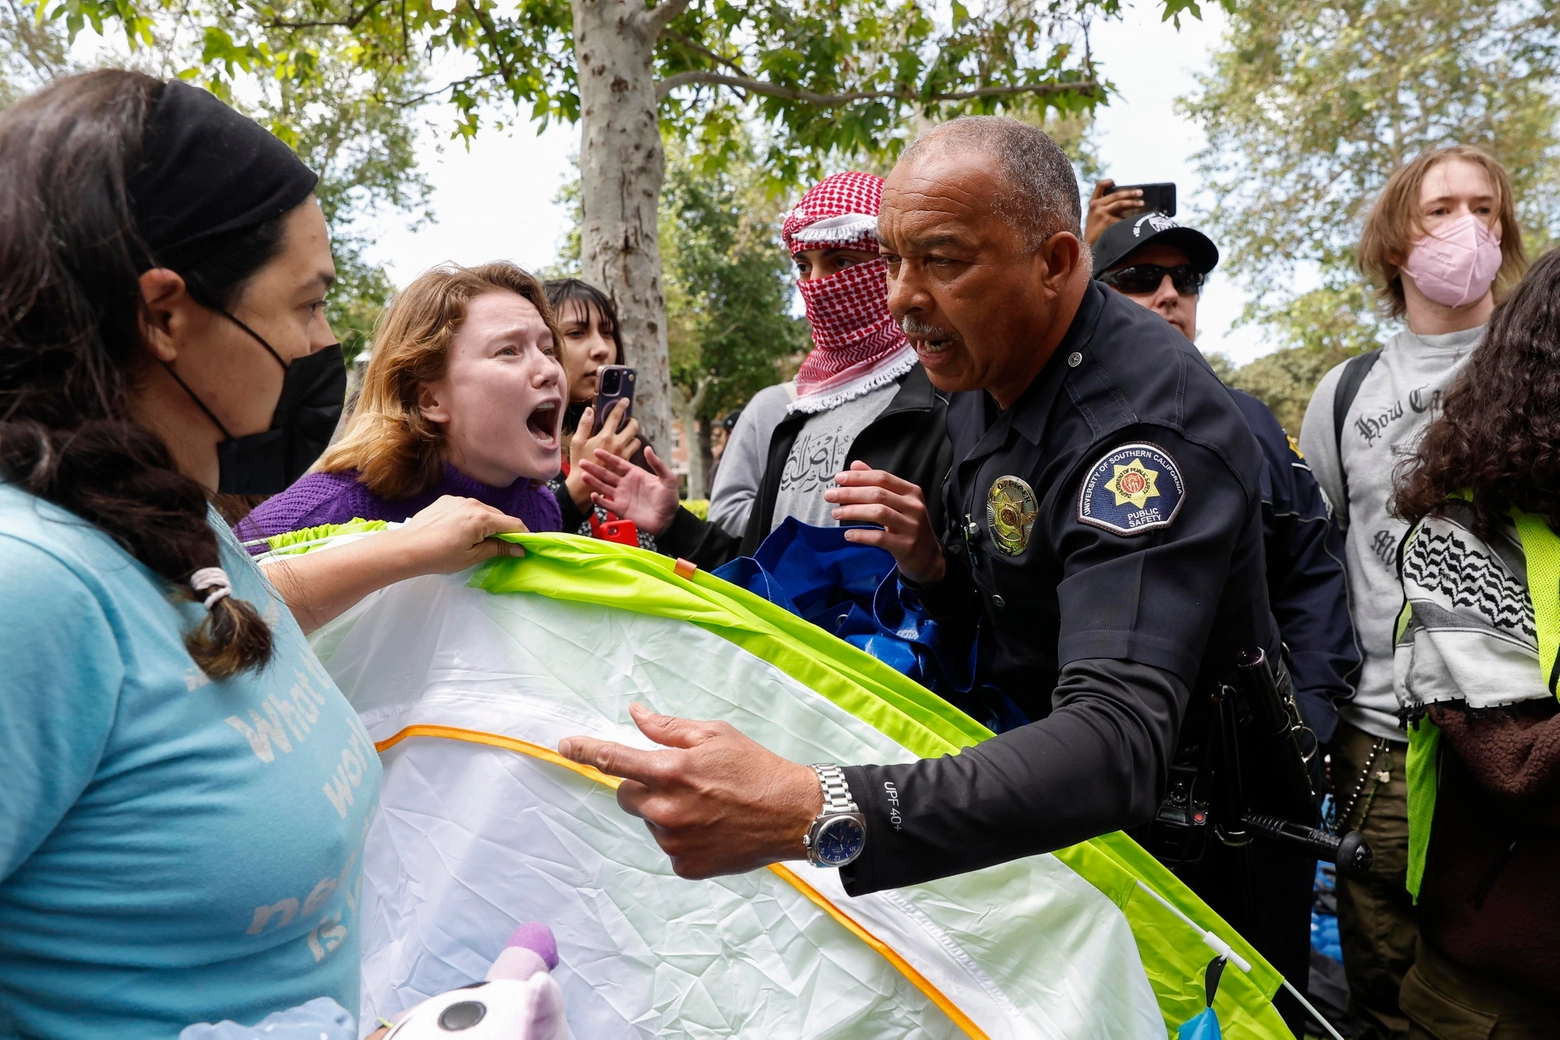 Proteste pro-Gaza: 93 arresti in un campus di Los Angeles